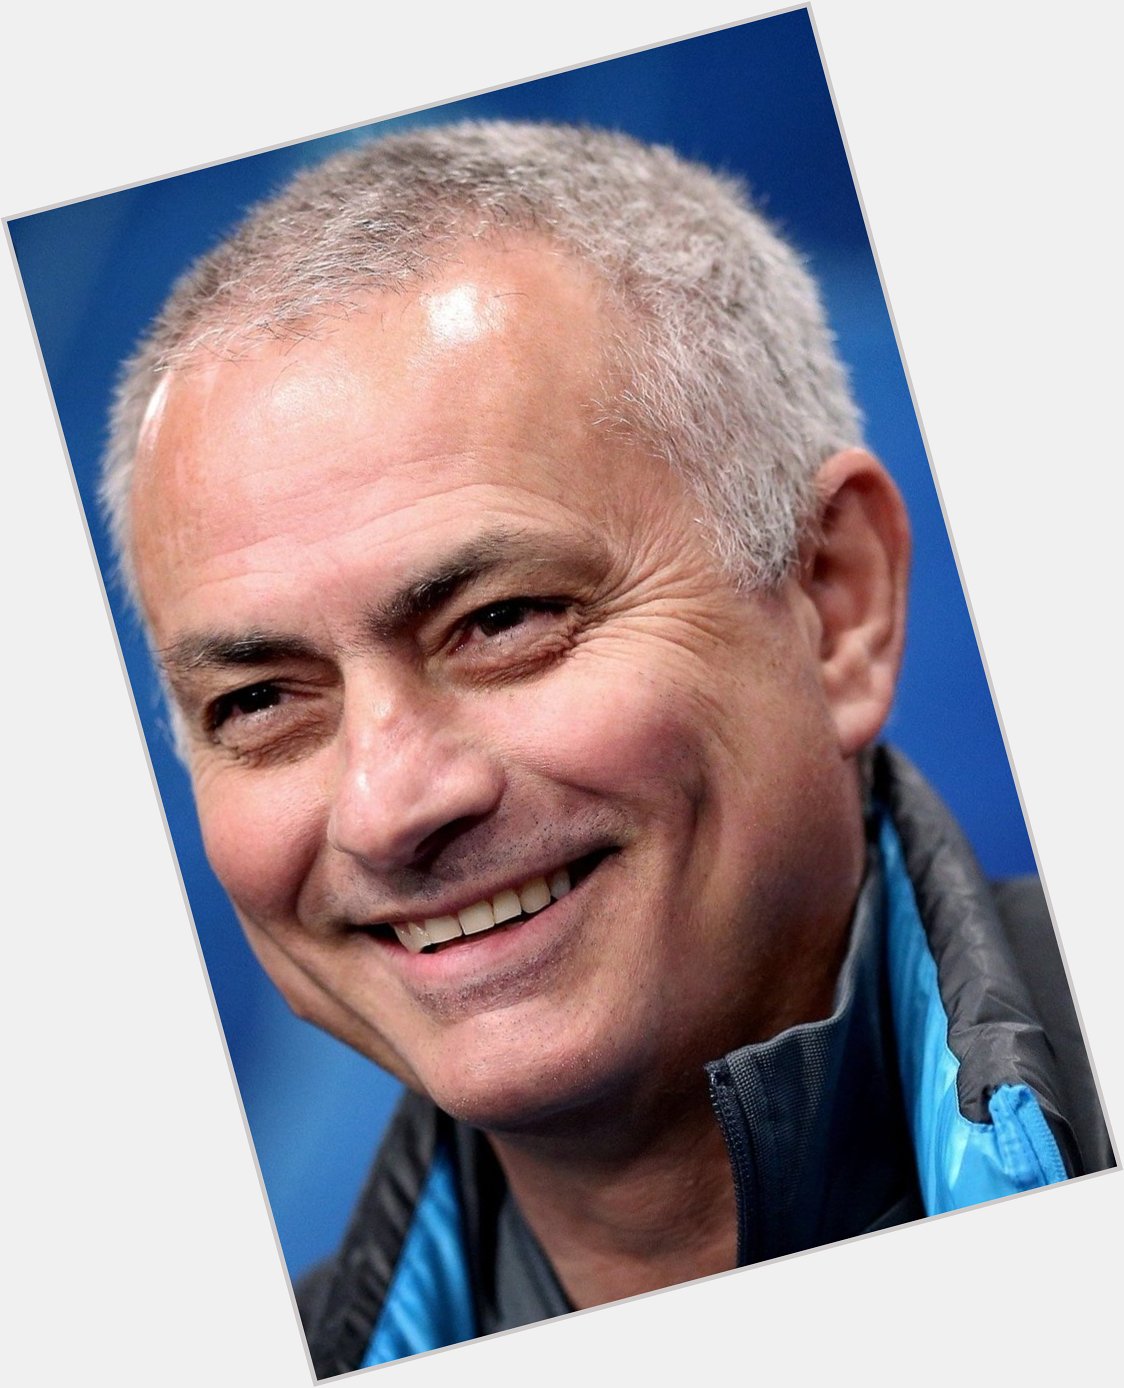 Happy Birthday Mr Perfect kalimagezi
Jose Mourinho   